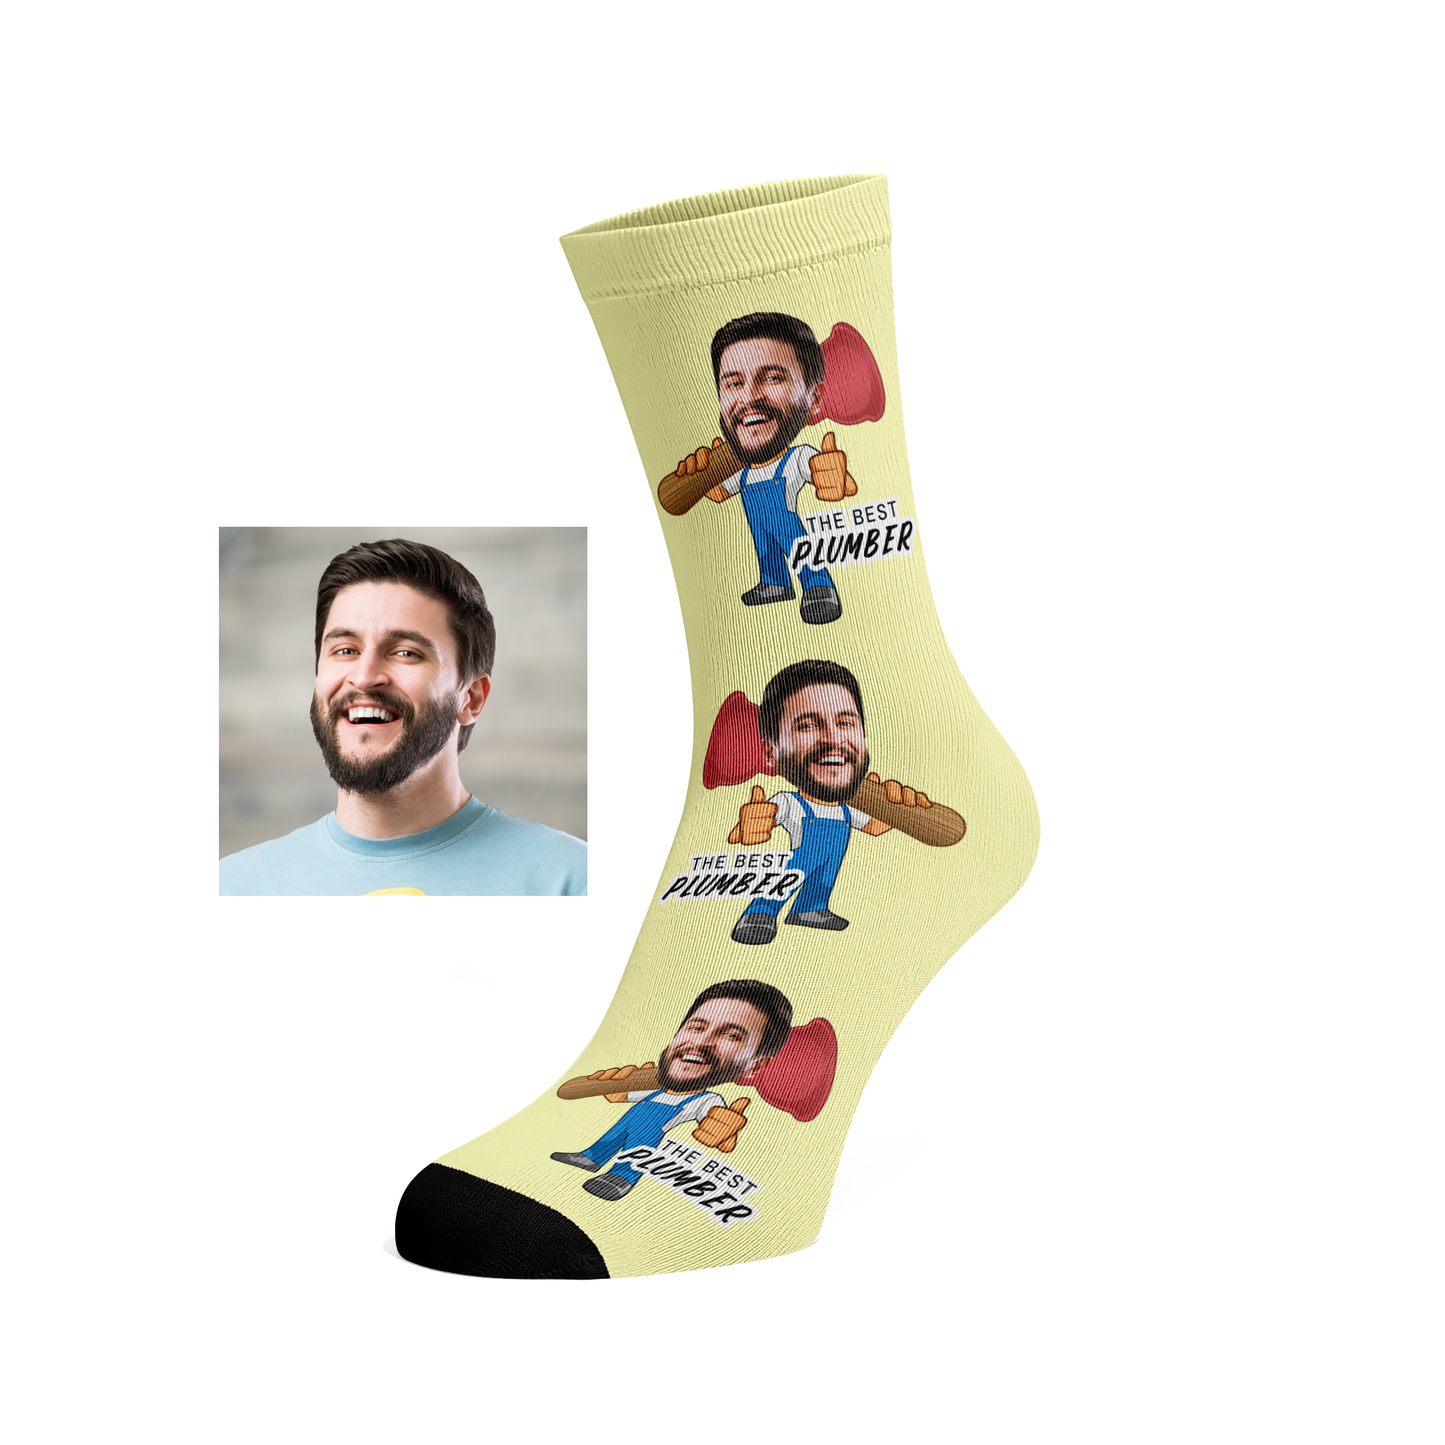 Custom Face Plumber Socks